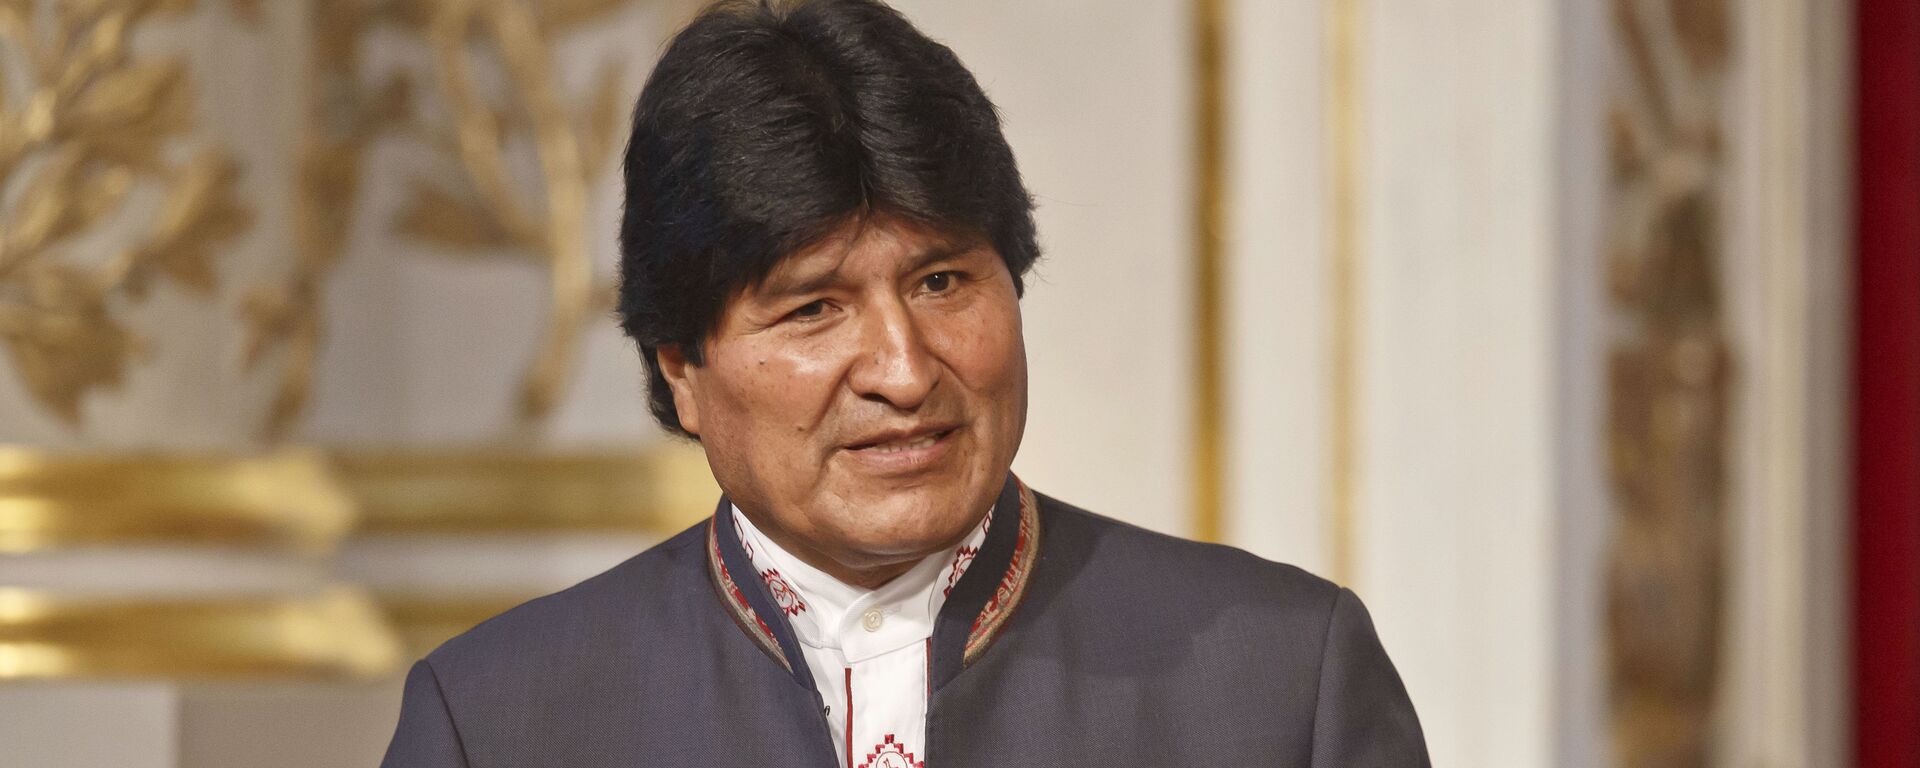 Evo Morales, expresidente de Bolivia - Sputnik Mundo, 1920, 18.08.2021